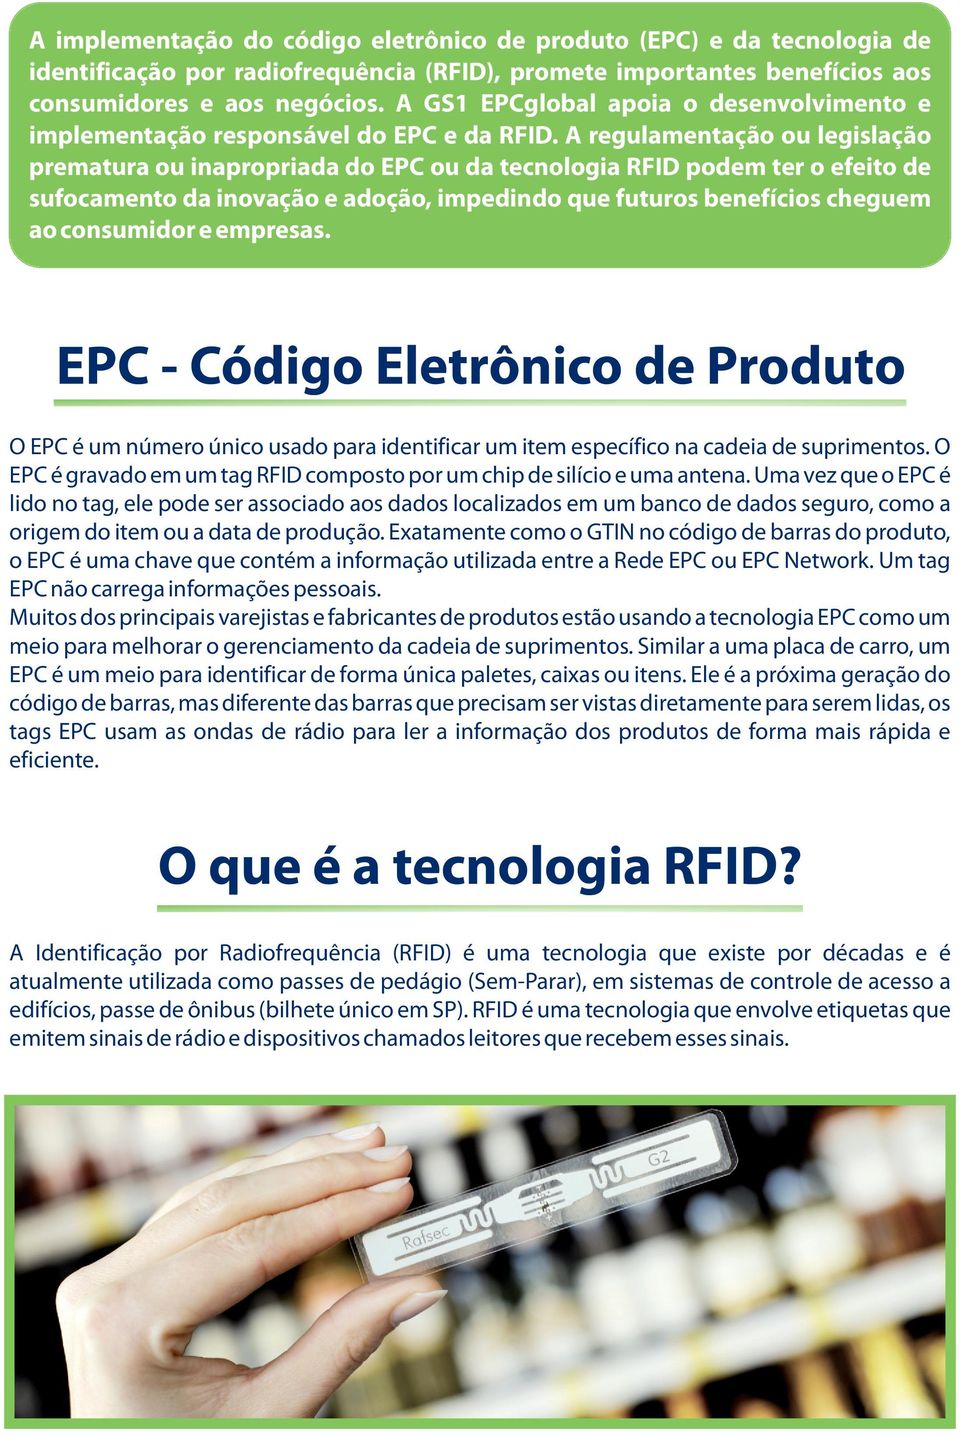 A regulamentação ou legislação prematura ou inapropriada do EPC ou da tecnologia RFID podem ter o efeito de sufocamento da inovação e adoção, impedindo que futuros benefícios cheguem ao consumidor e